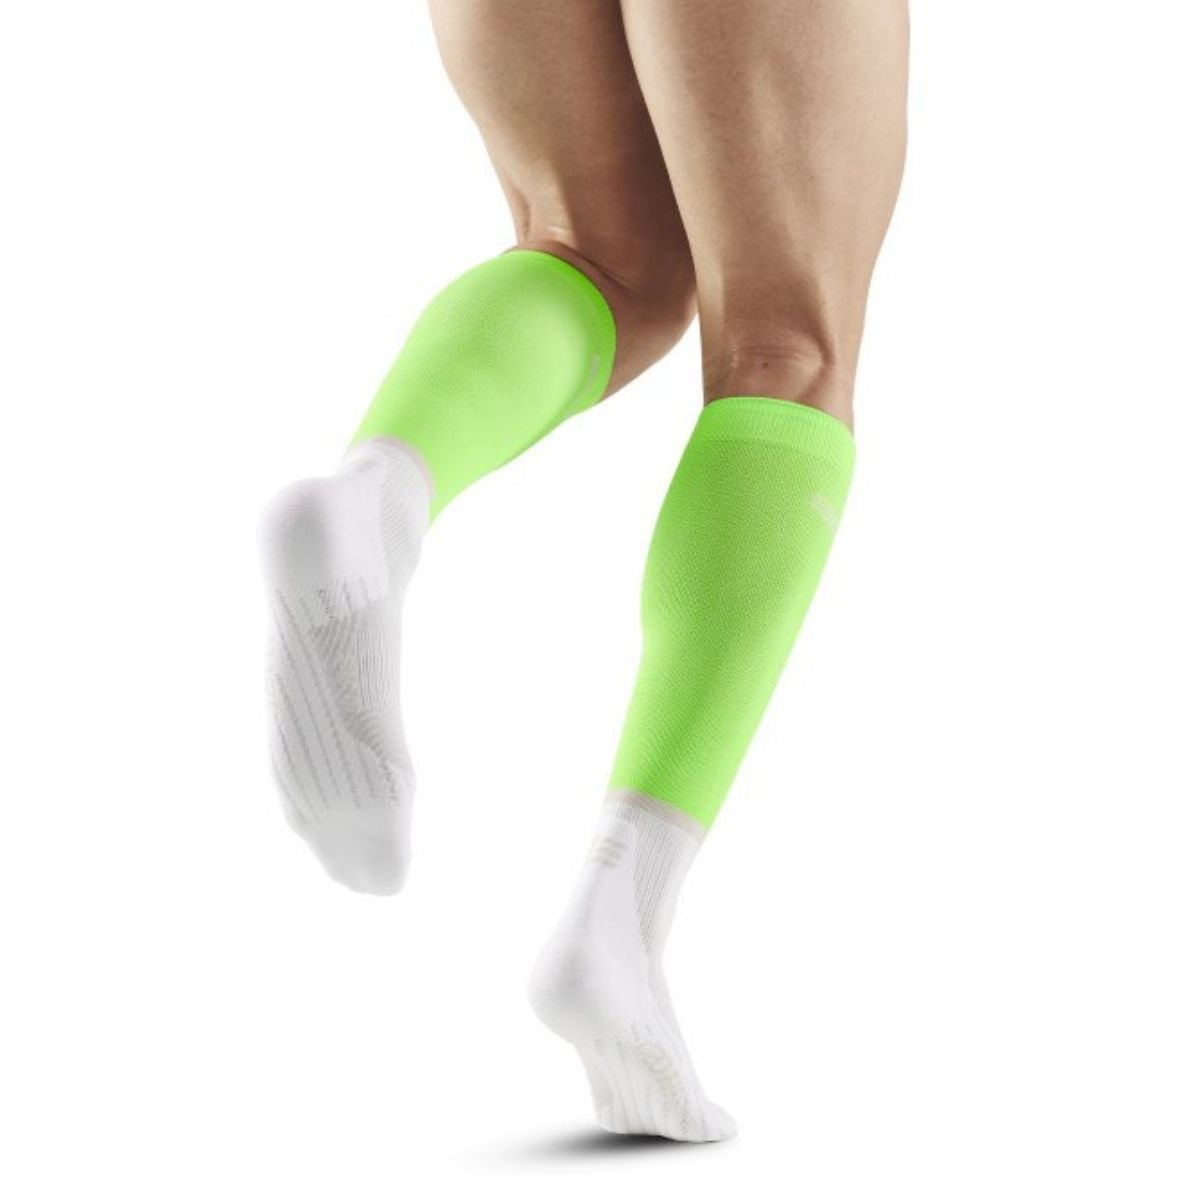 Ponožky CEP 4.0 M - zelená/biela